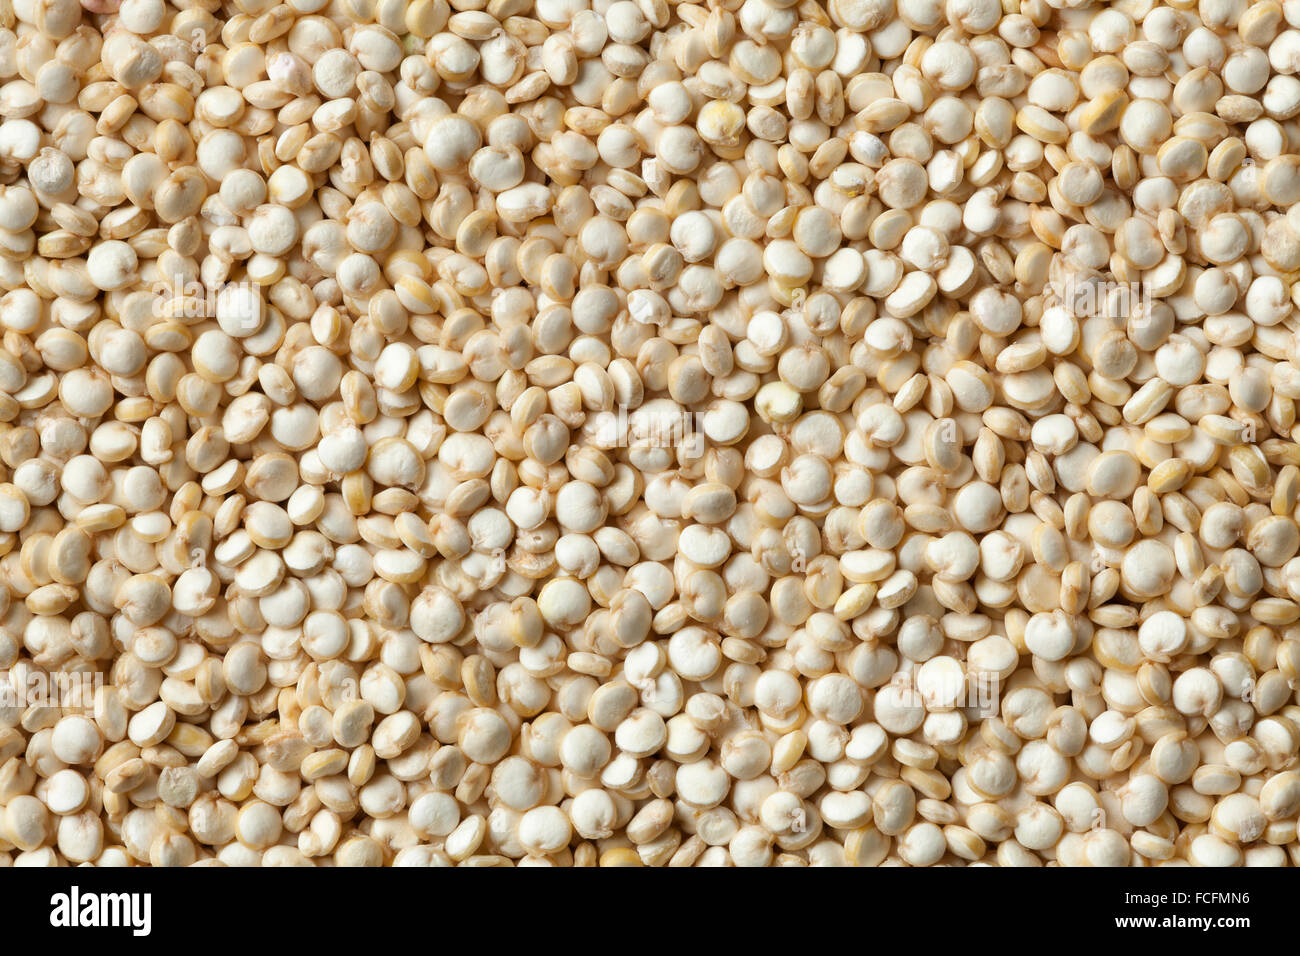 Les graines de quinoa cru full frame close up Banque D'Images